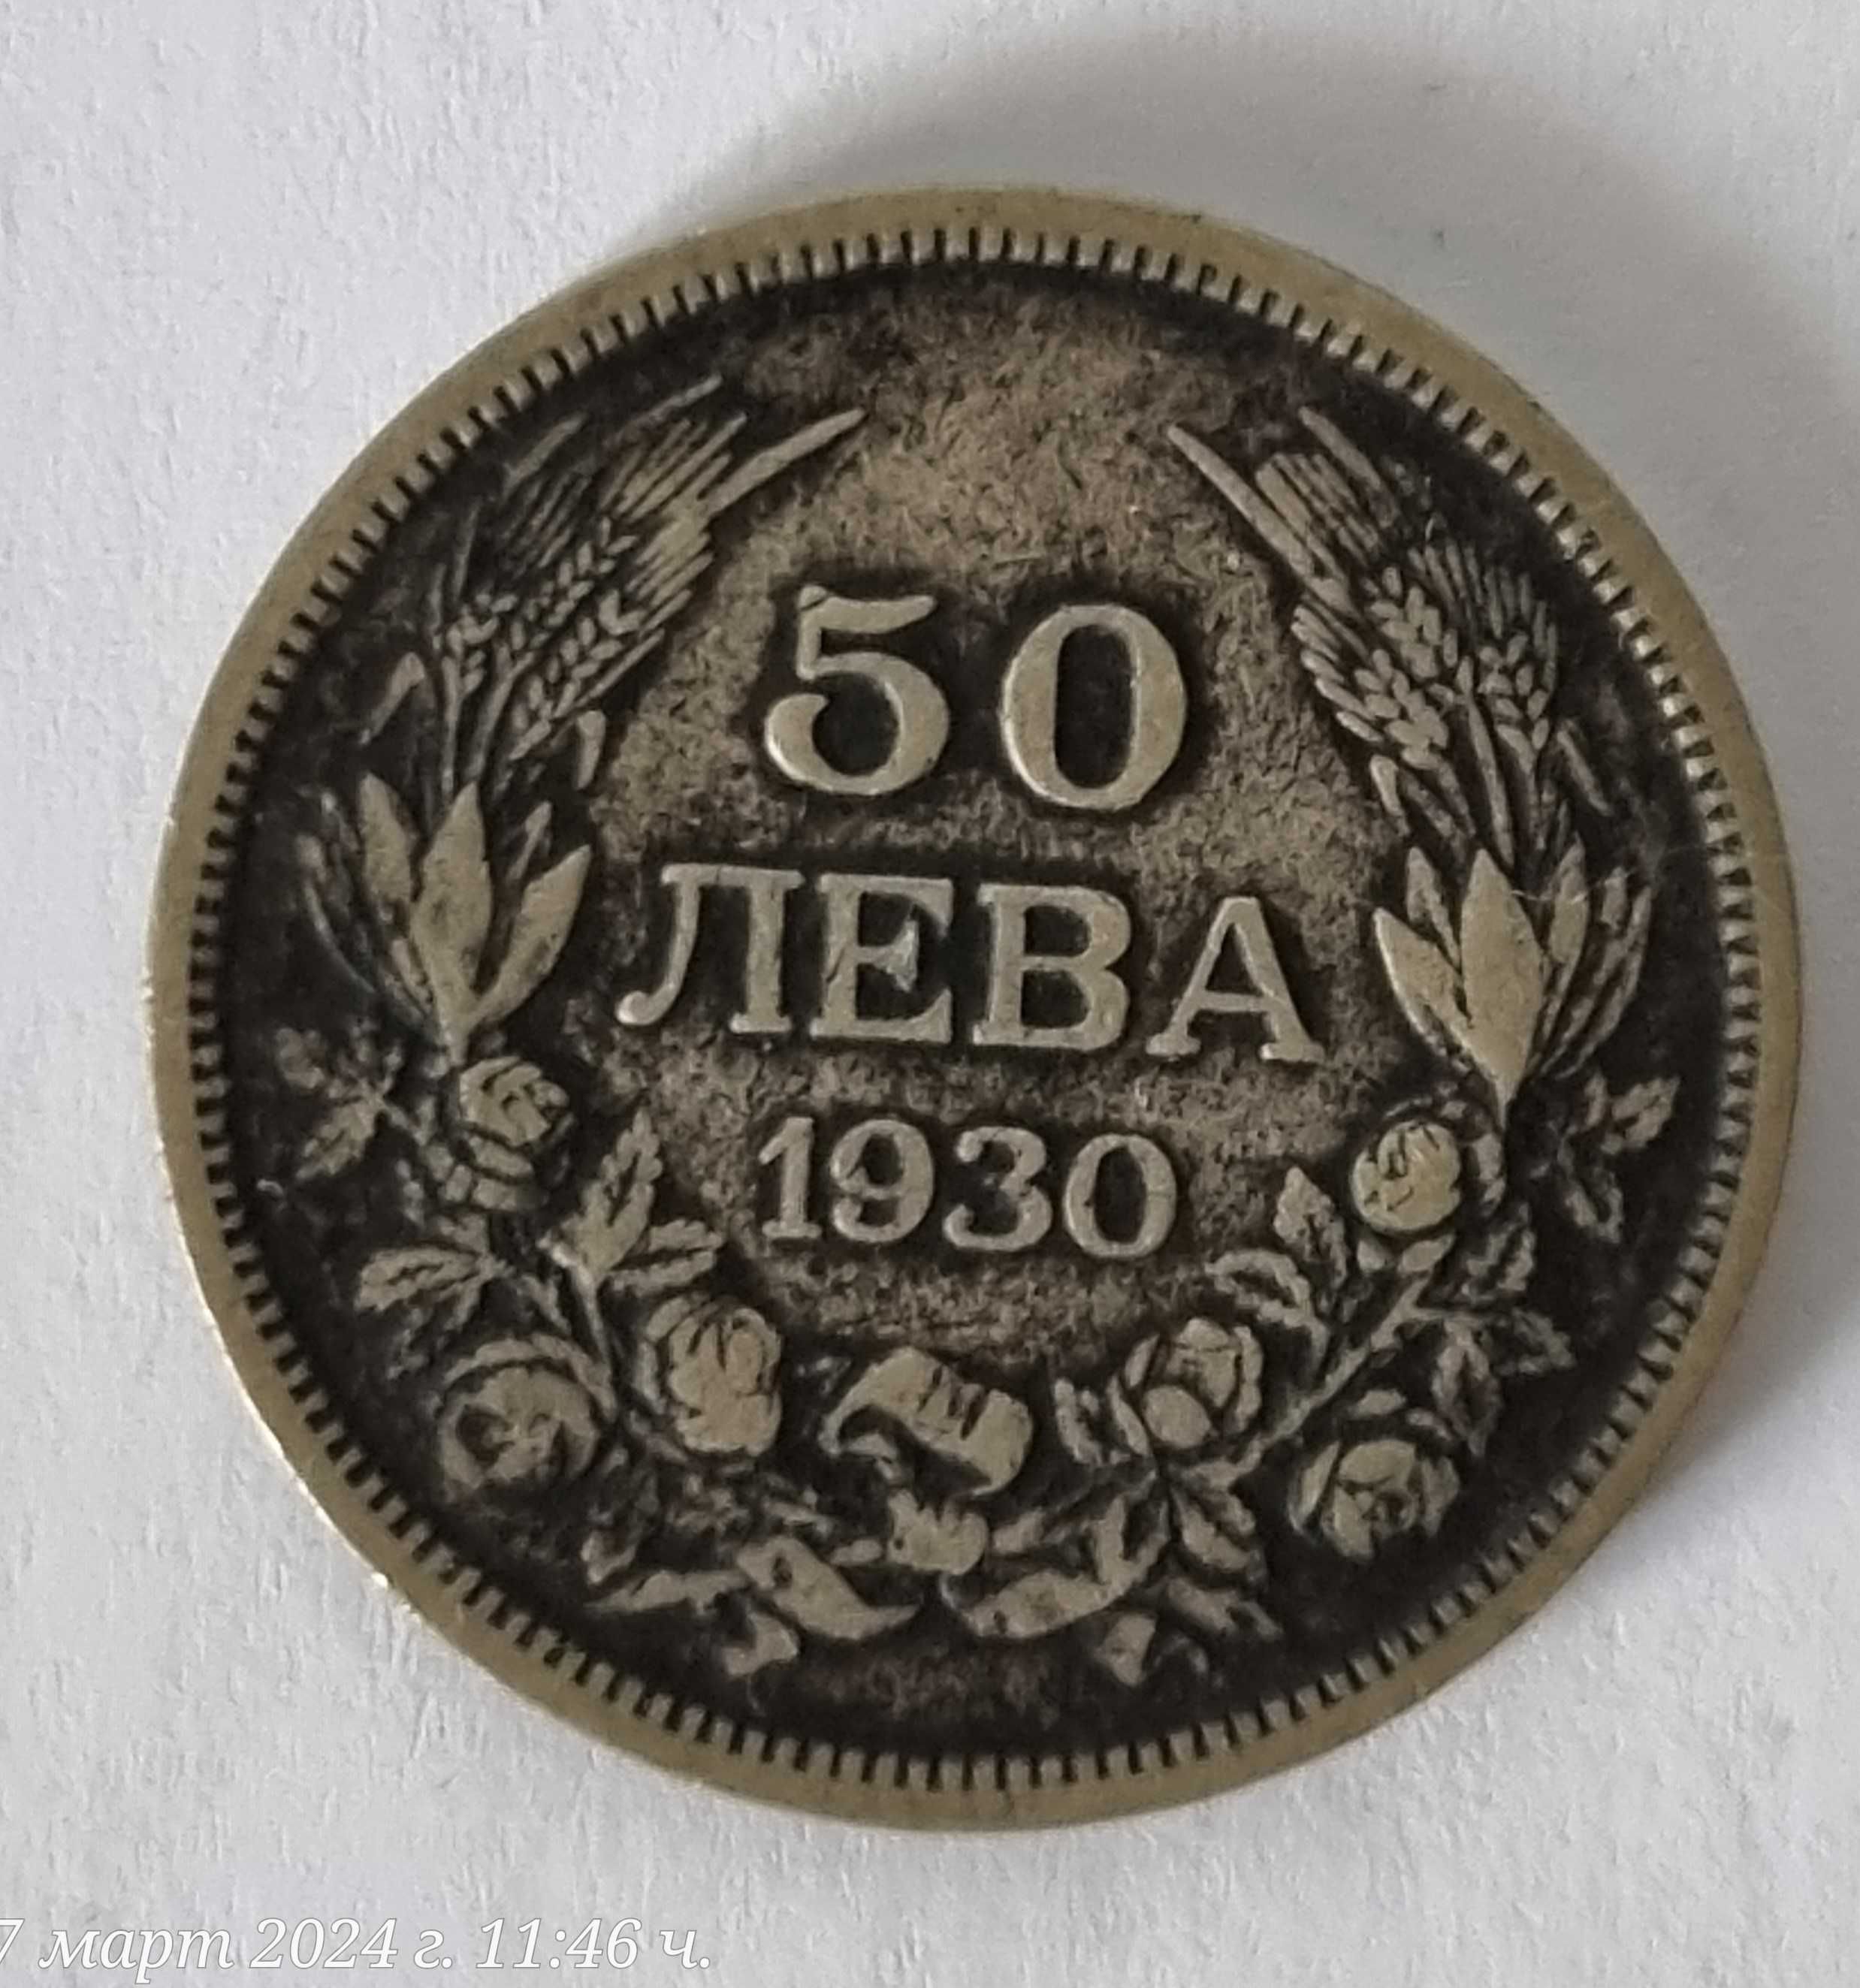 Сребърни български монети